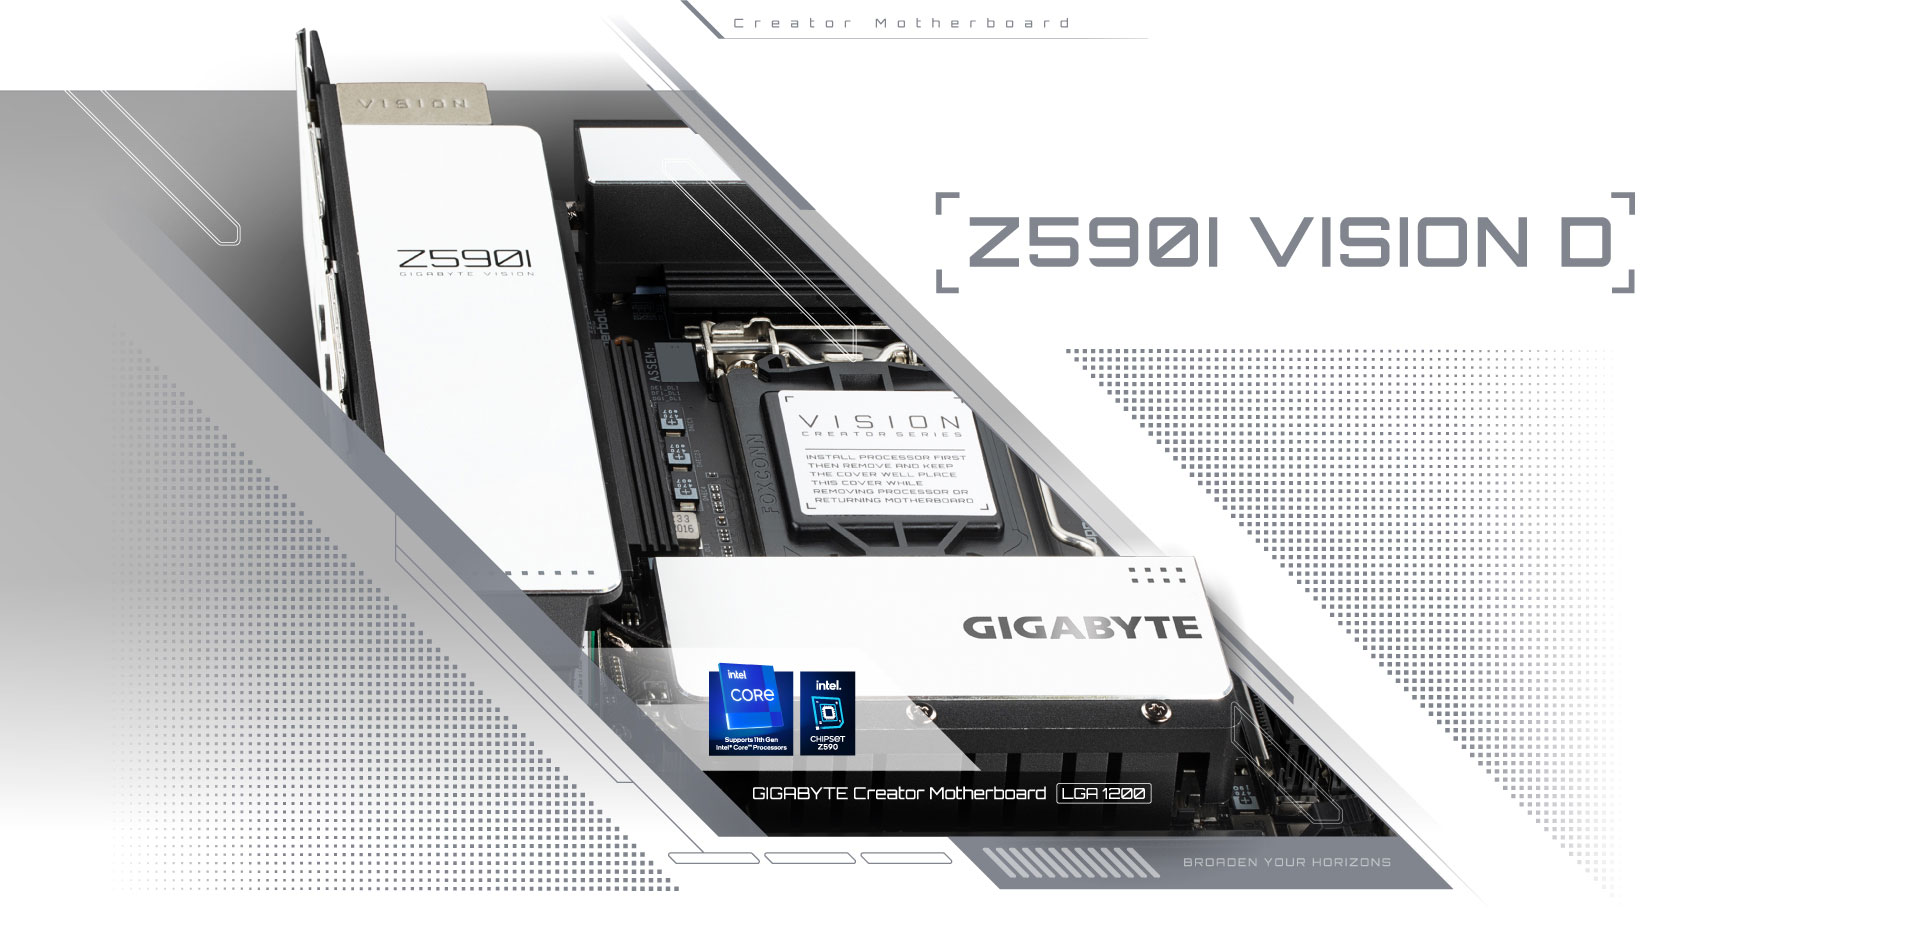 Z590I VISION D (rev. 1.0) Key Features | Motherboard - GIGABYTE Global